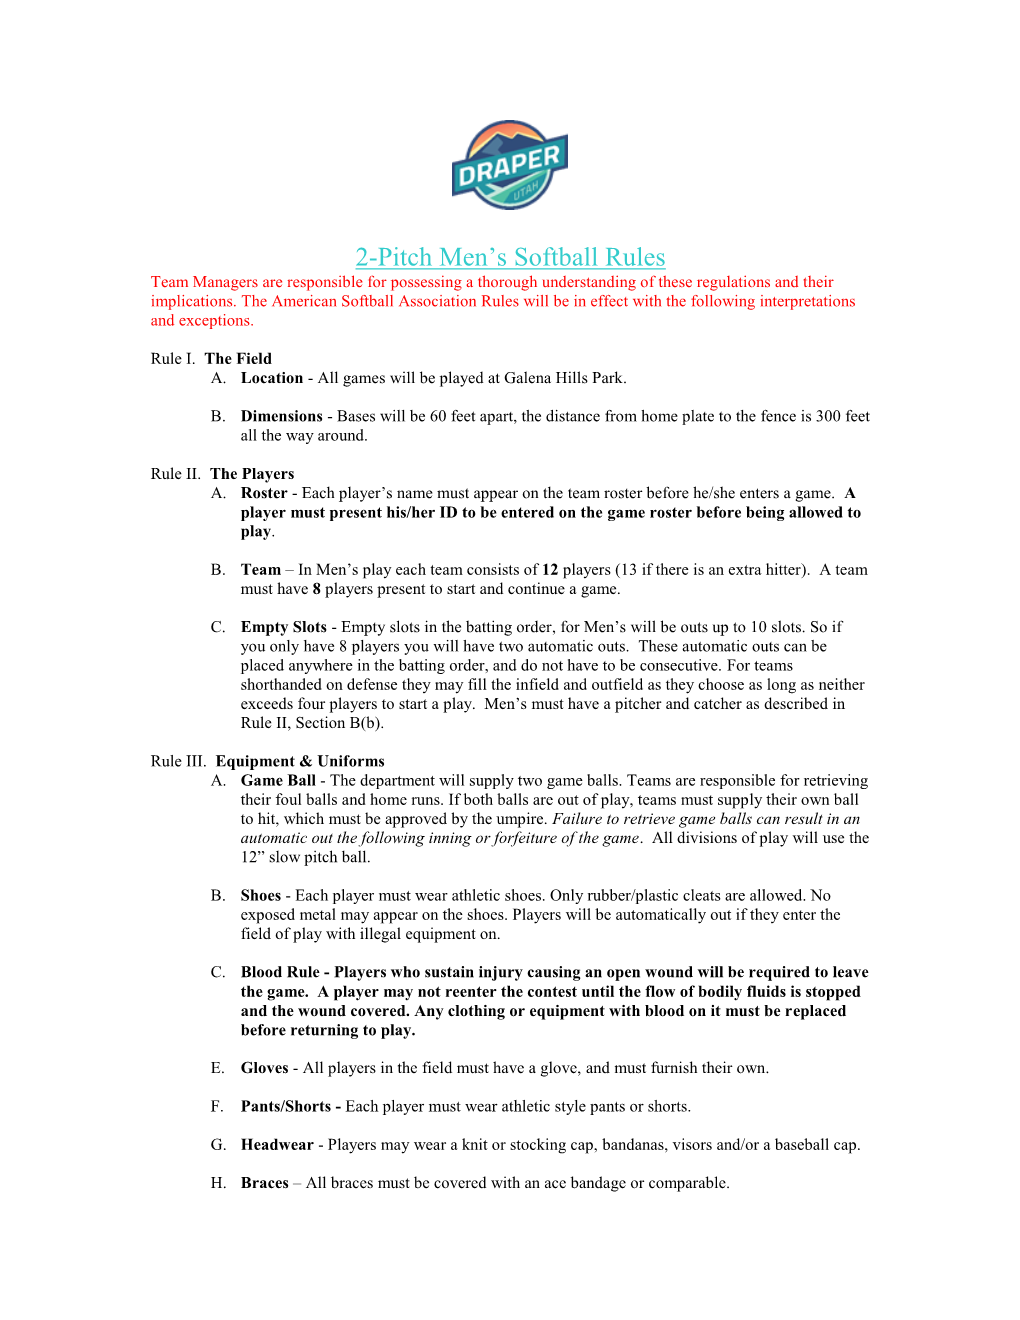 2-Pitch Softball Rules